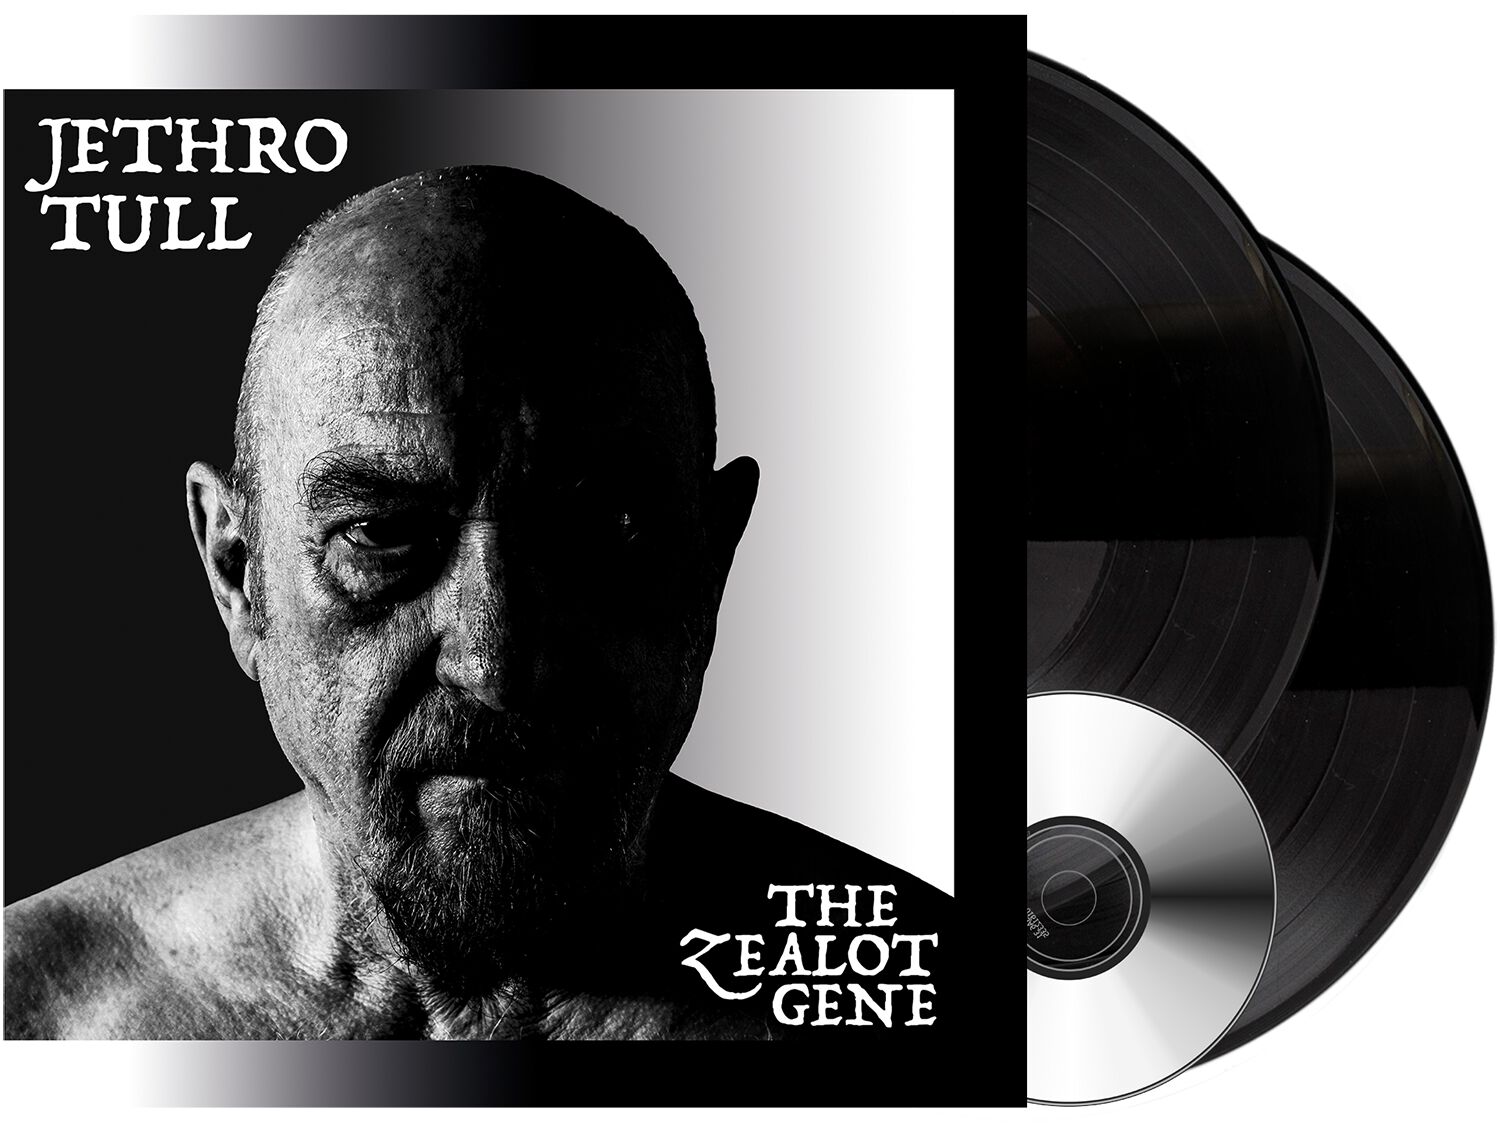 Image of Jethro Tull The zealot gene 2-LP & CD schwarz